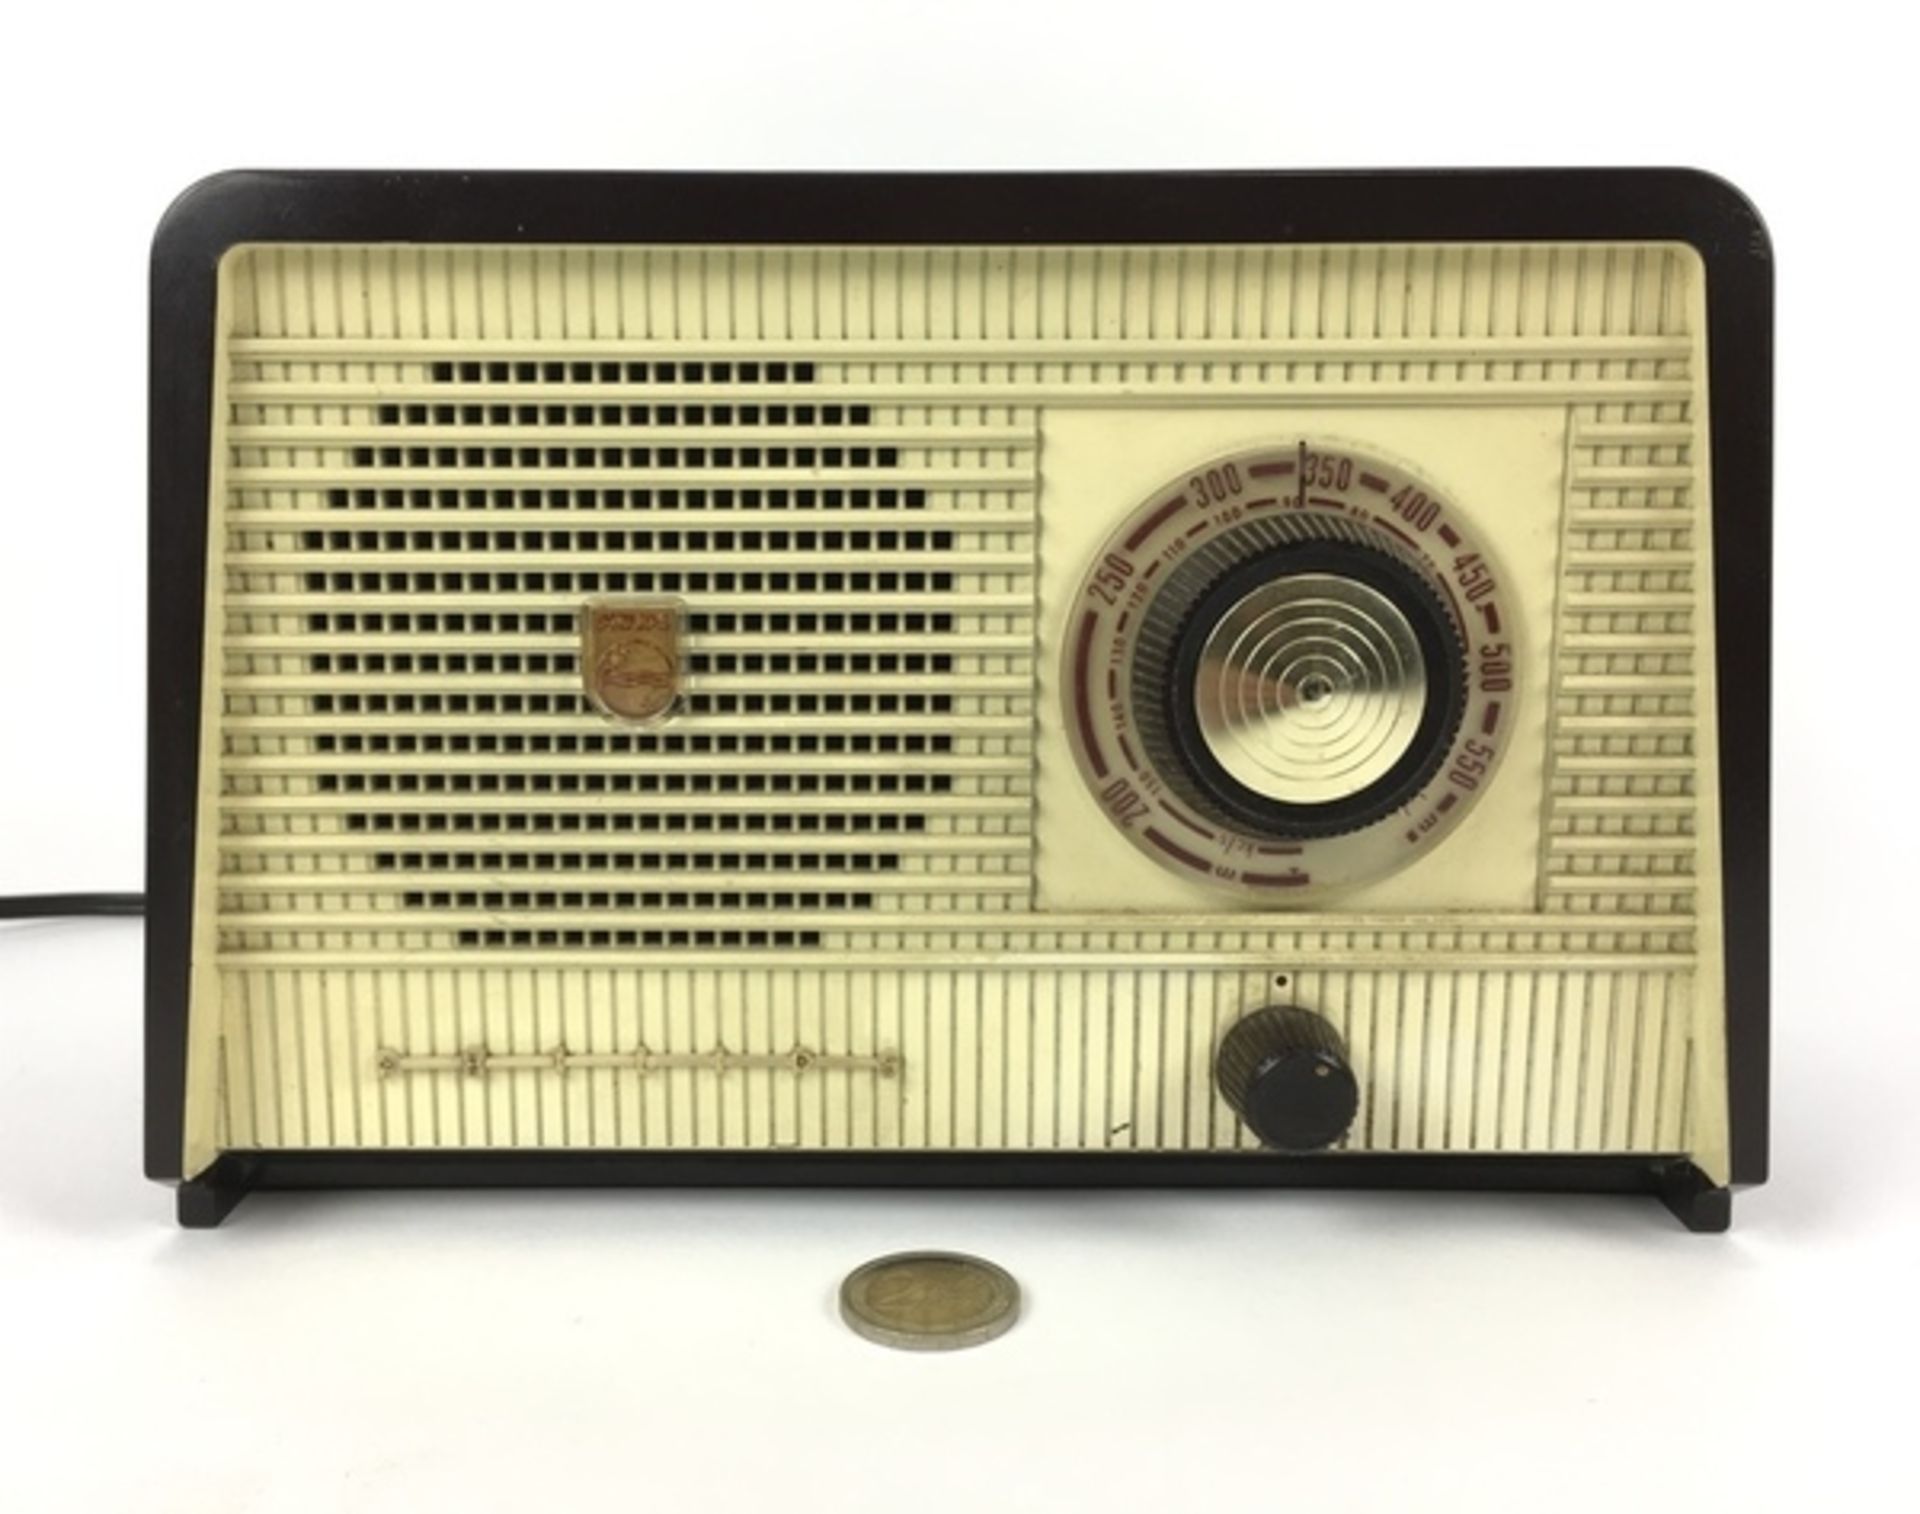 (Curiosa) Radio, Philips Bakelieten Philips radio, circa 1960. Conditie: In gebruikte staat. Af - Bild 2 aus 6